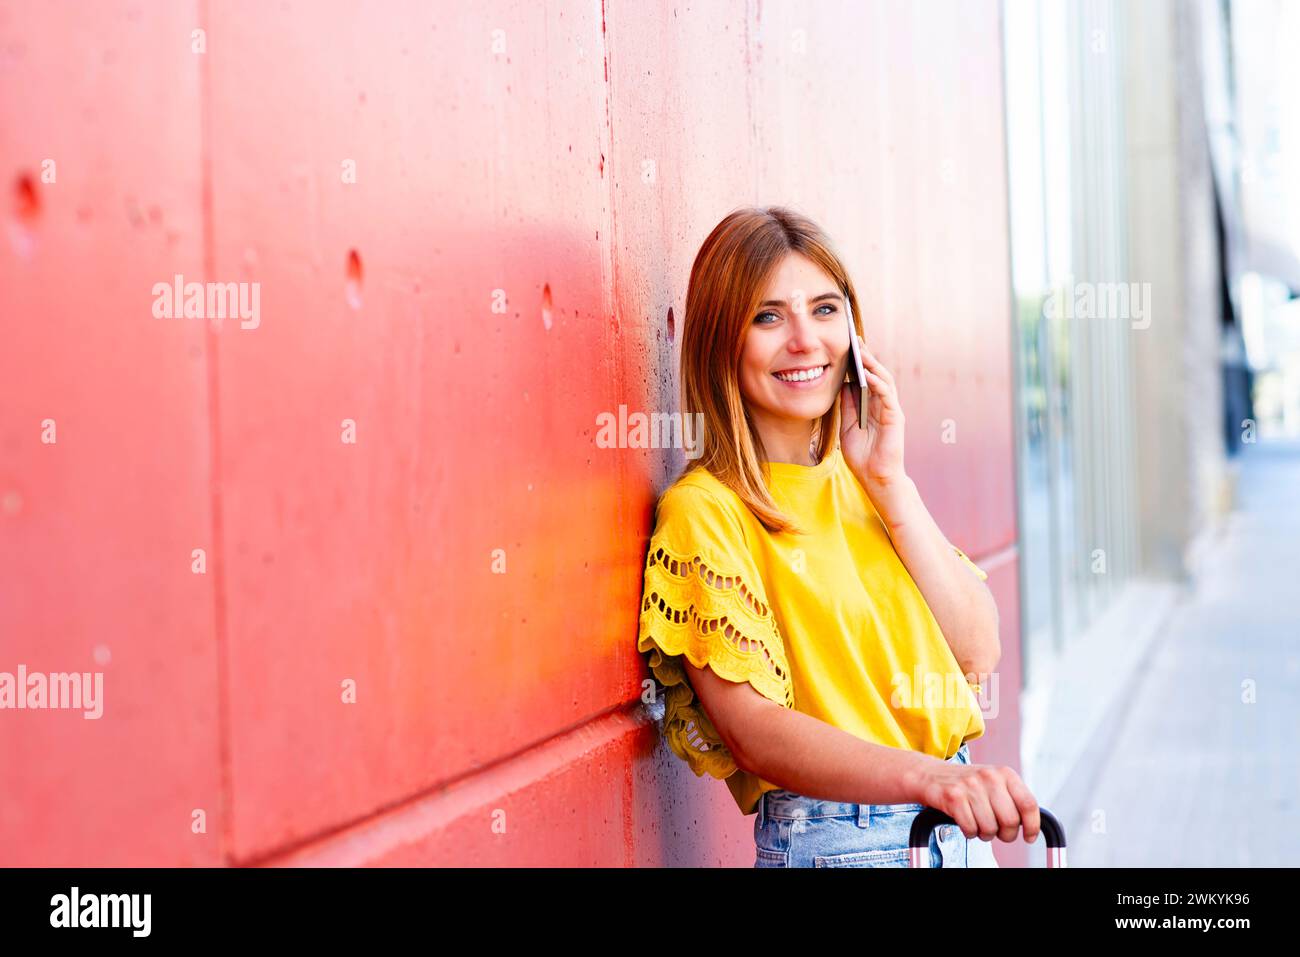 Eine junge Frau lehnt sich lässig an eine strukturierte rote Wand, tief im Gespräch mit ihrem Smartphone. Ihre hellgelbe Bluse und ihr entspanntes Auftreten geben es Stockfoto